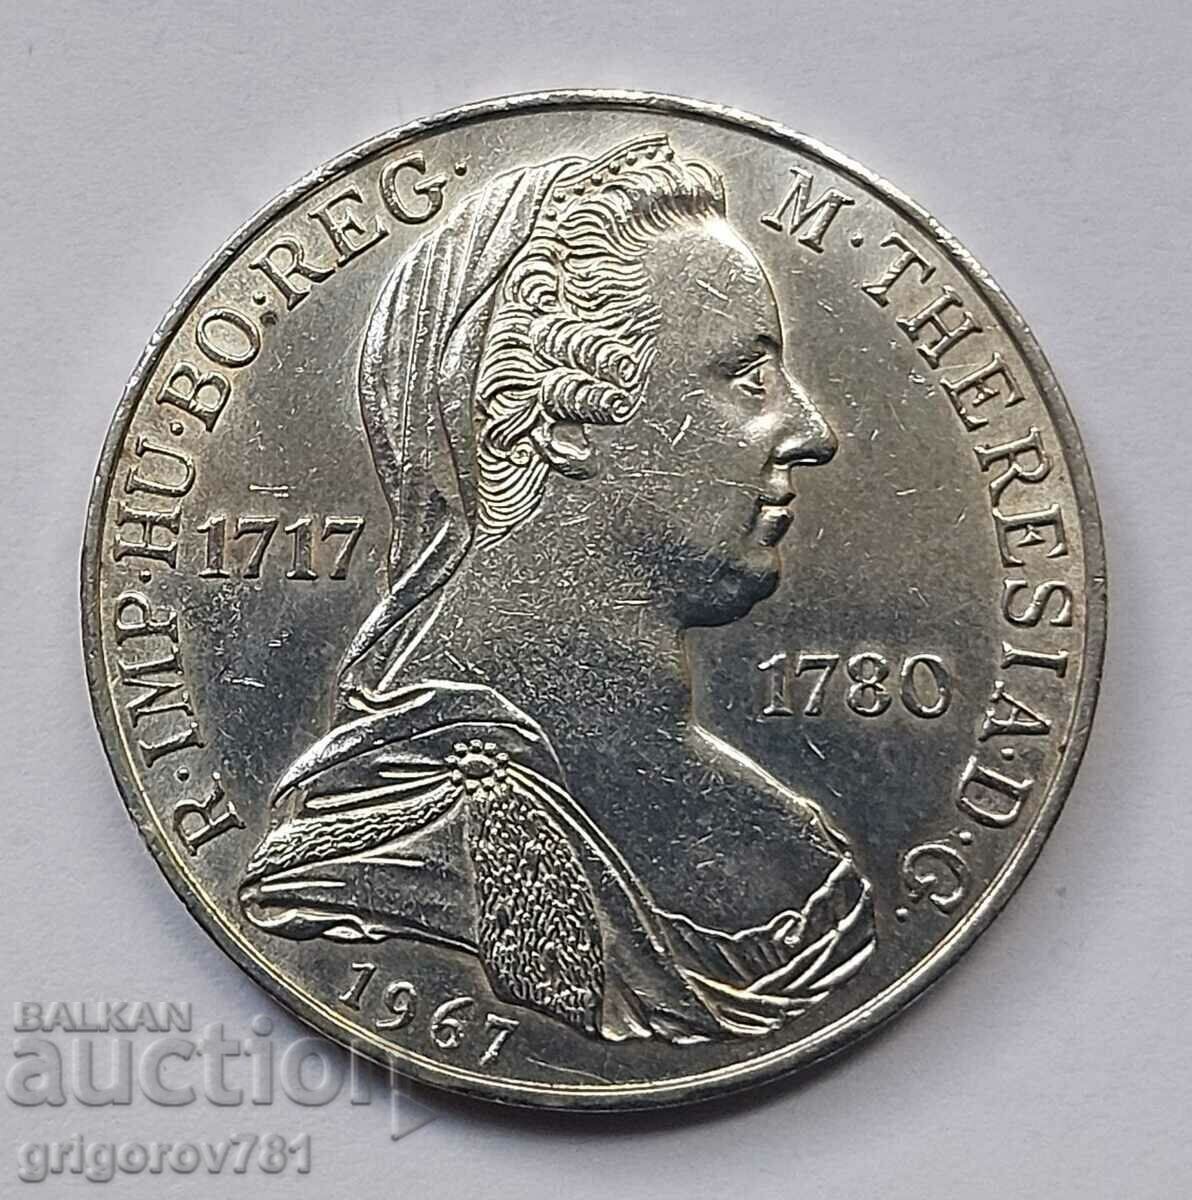 Ασημένιο 25 σελίνια Αυστρία 1967 - Ασημένιο νόμισμα #18